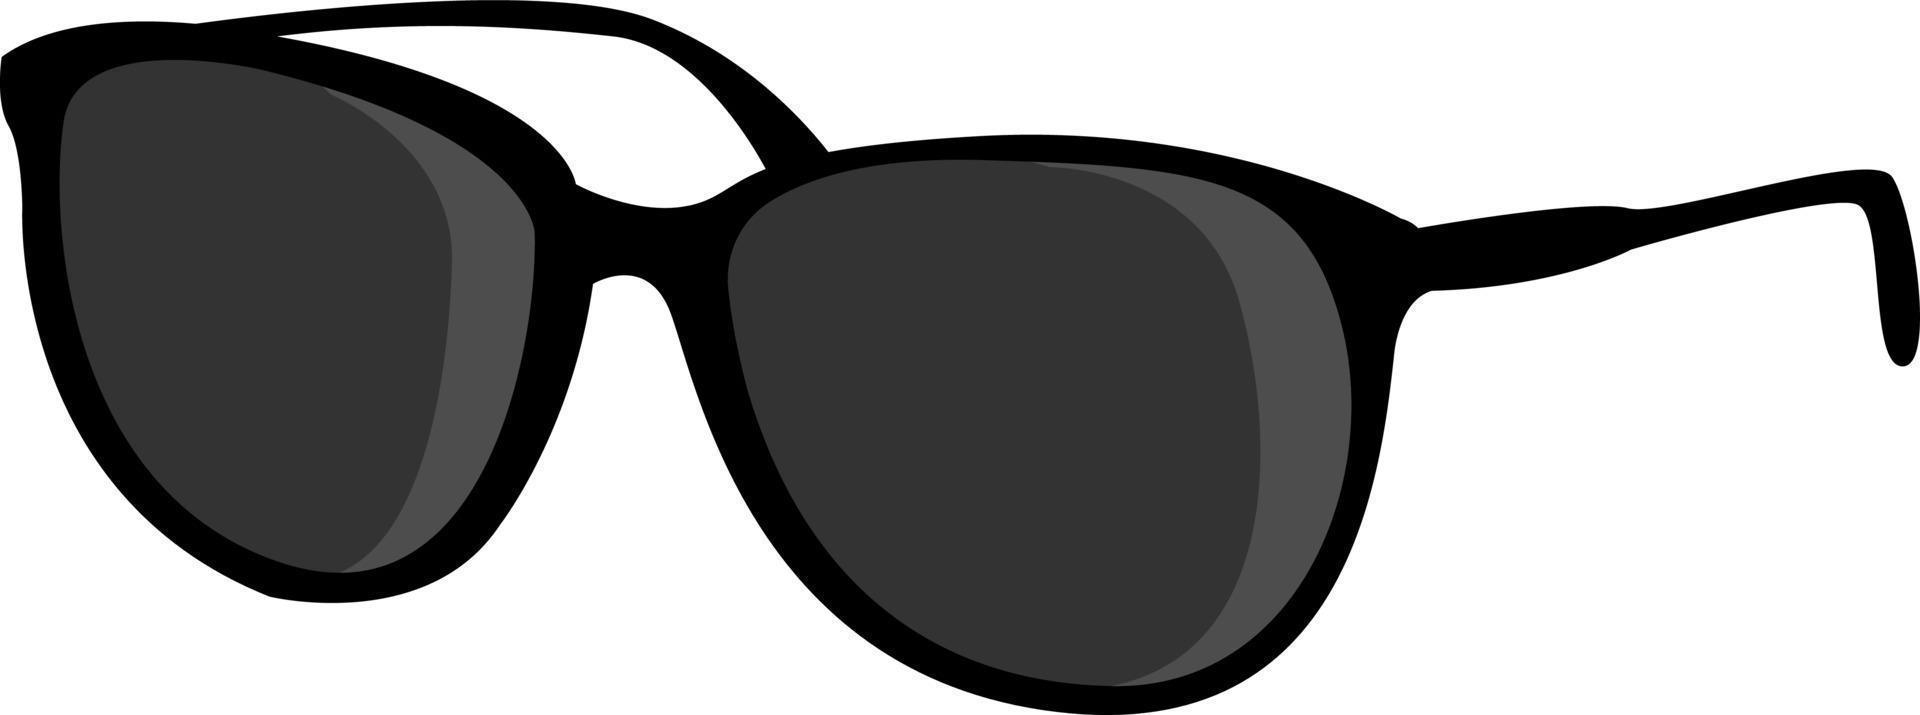 gafas negras, ilustración, vector sobre fondo blanco.